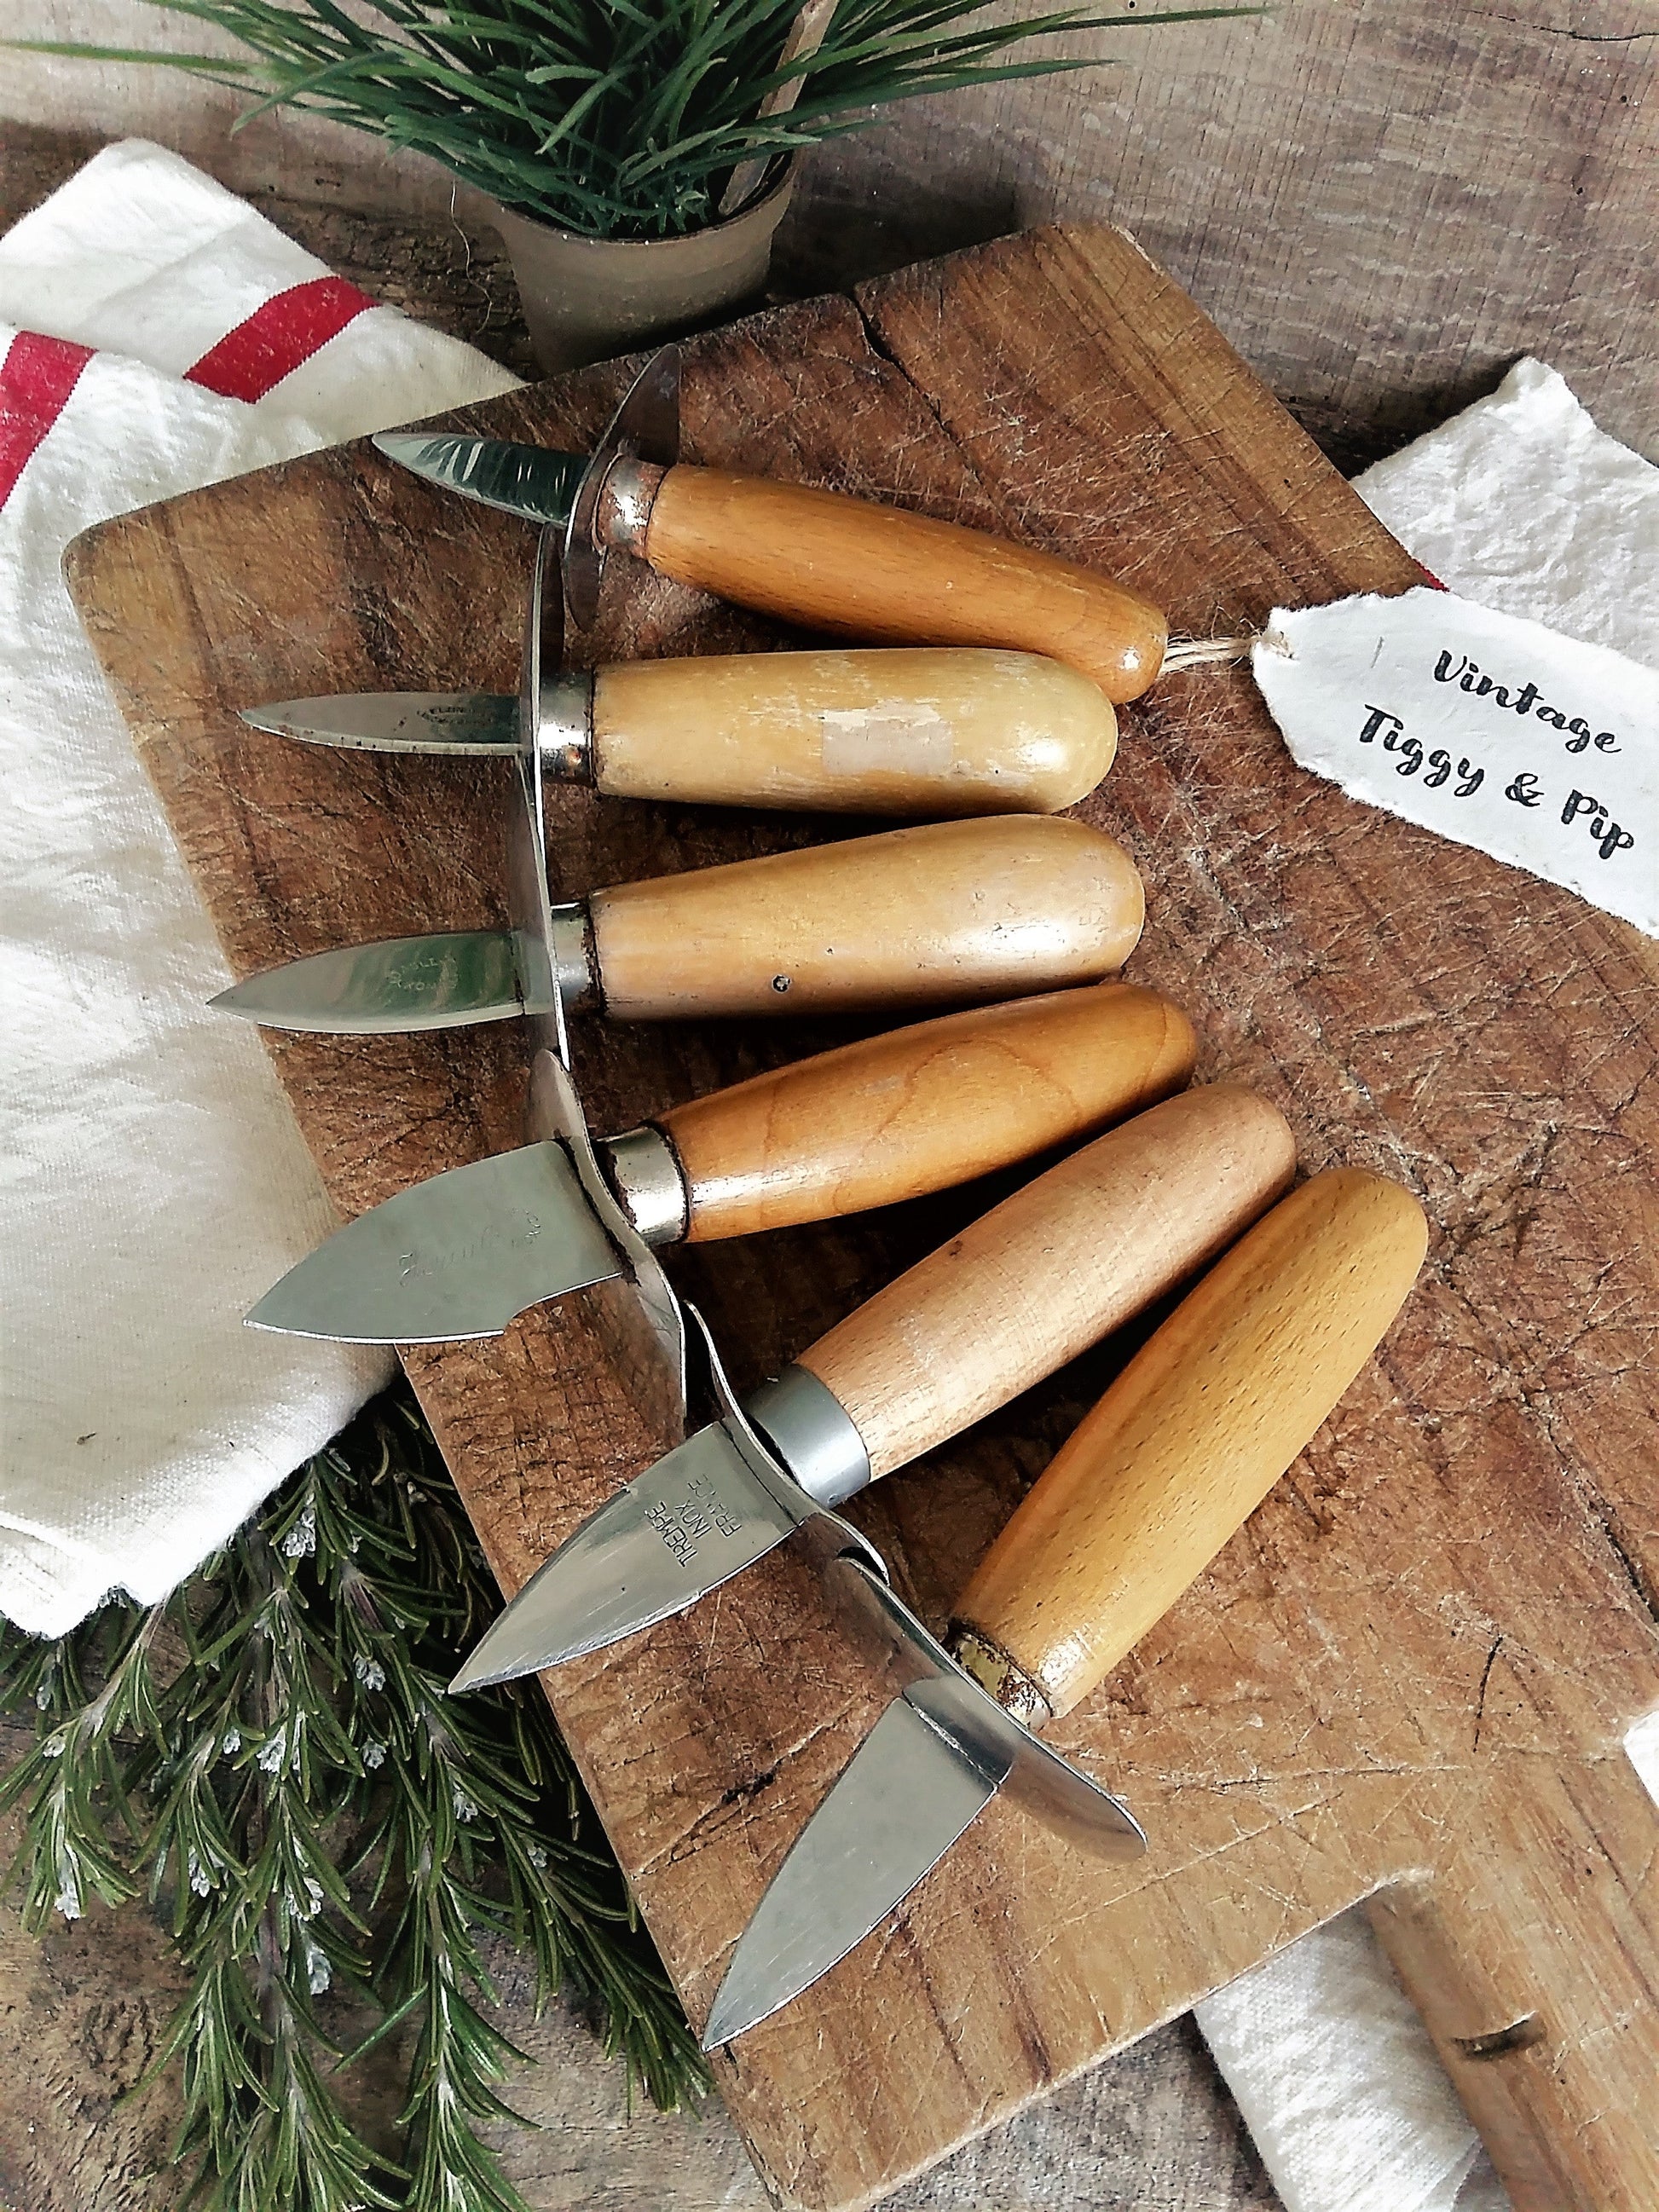 Six couteaux à écailler les huîtres vintage. – Tiggy and Pip